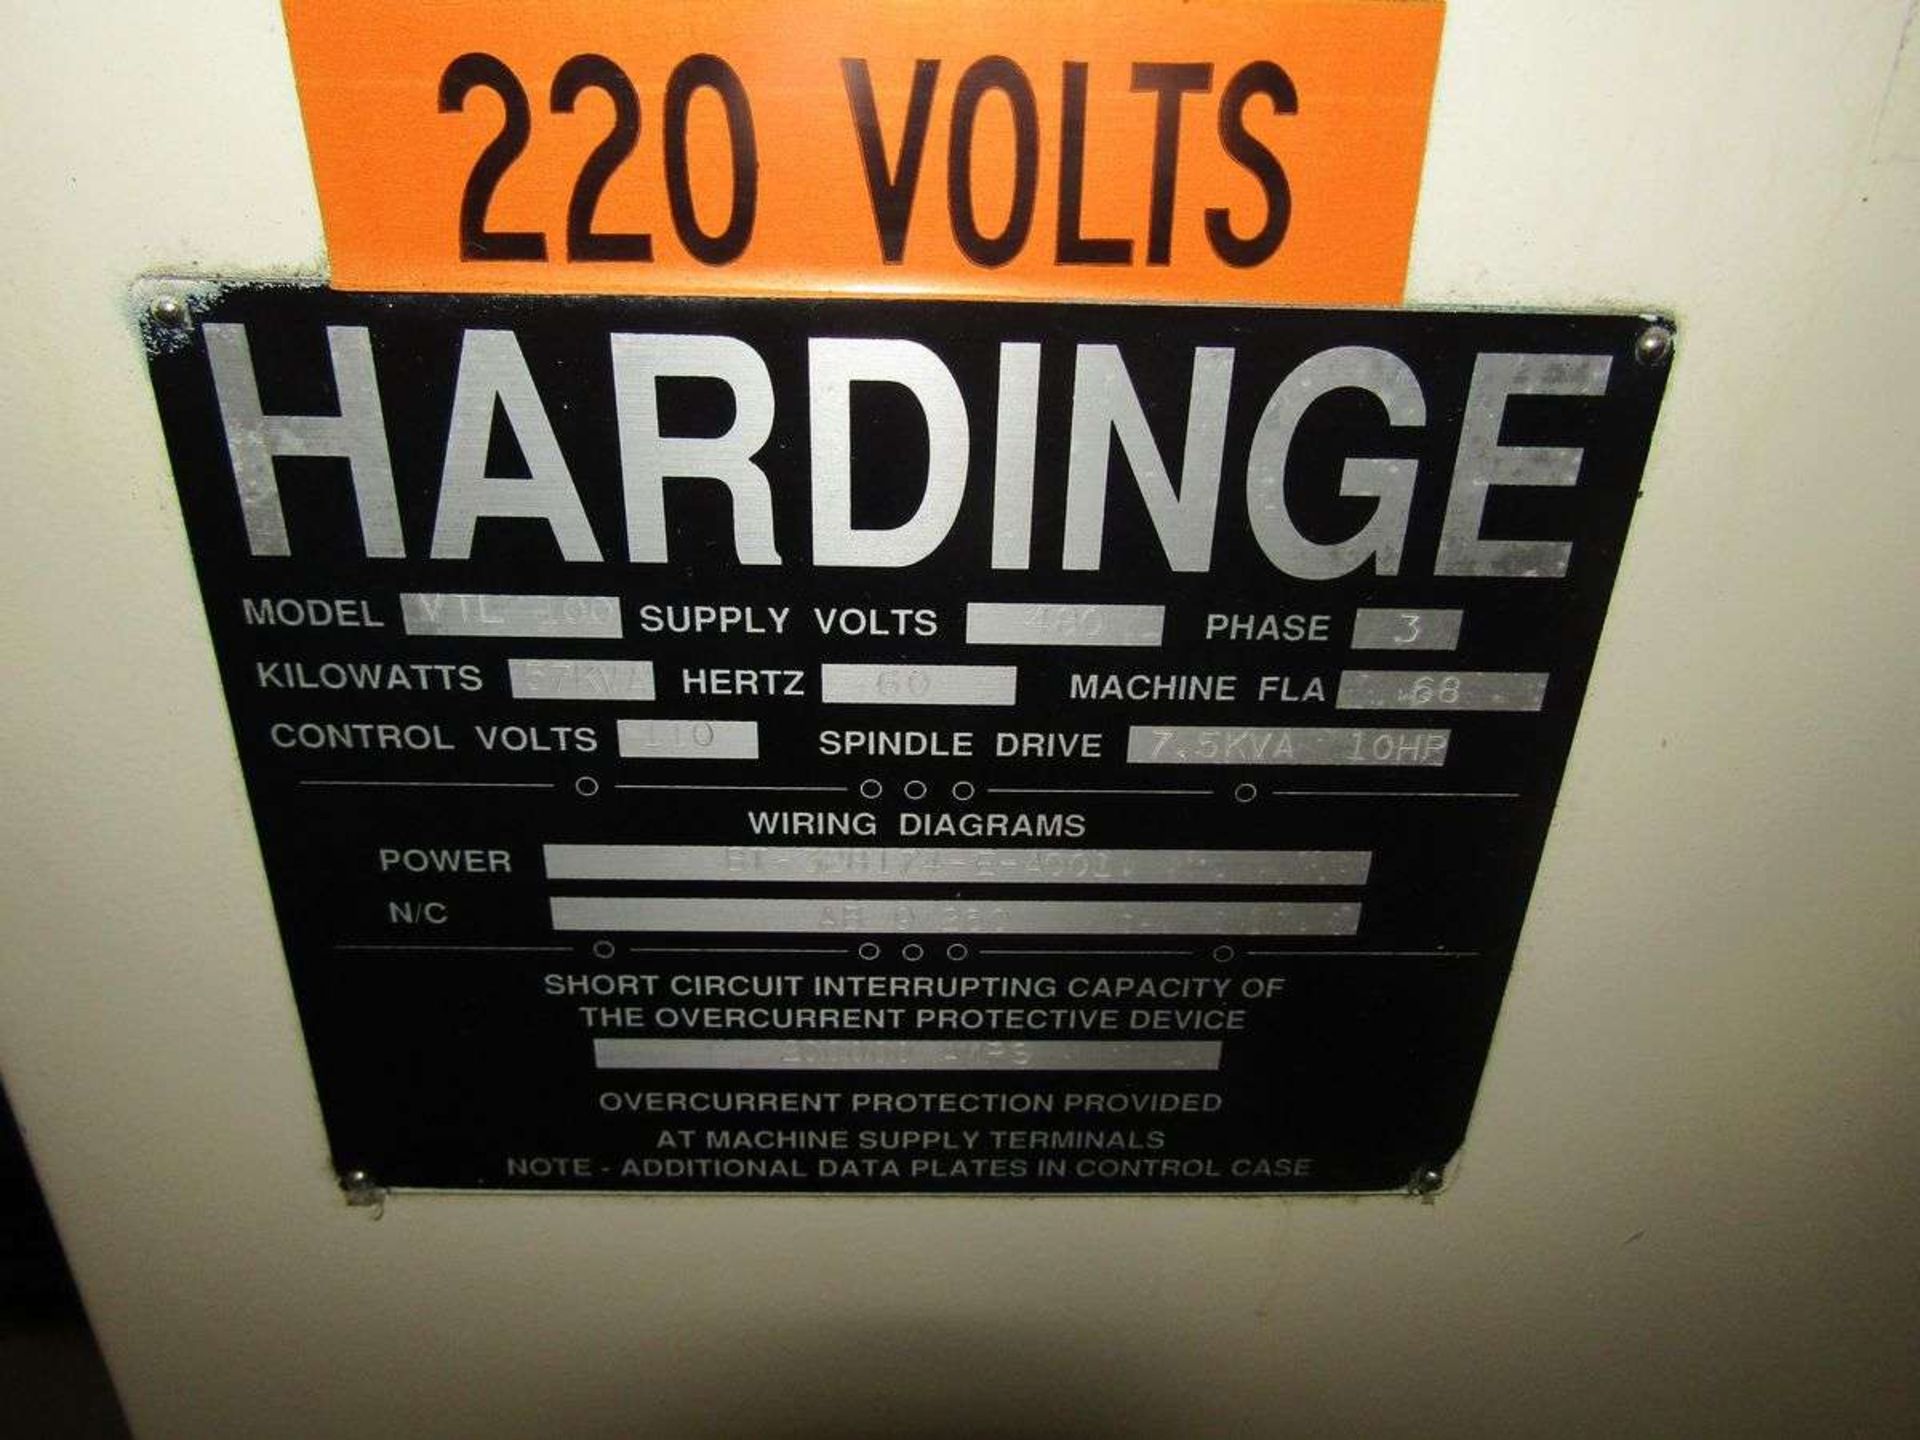 Hardinge VTL100 CNC Vertical Turret Lathe - Image 9 of 14